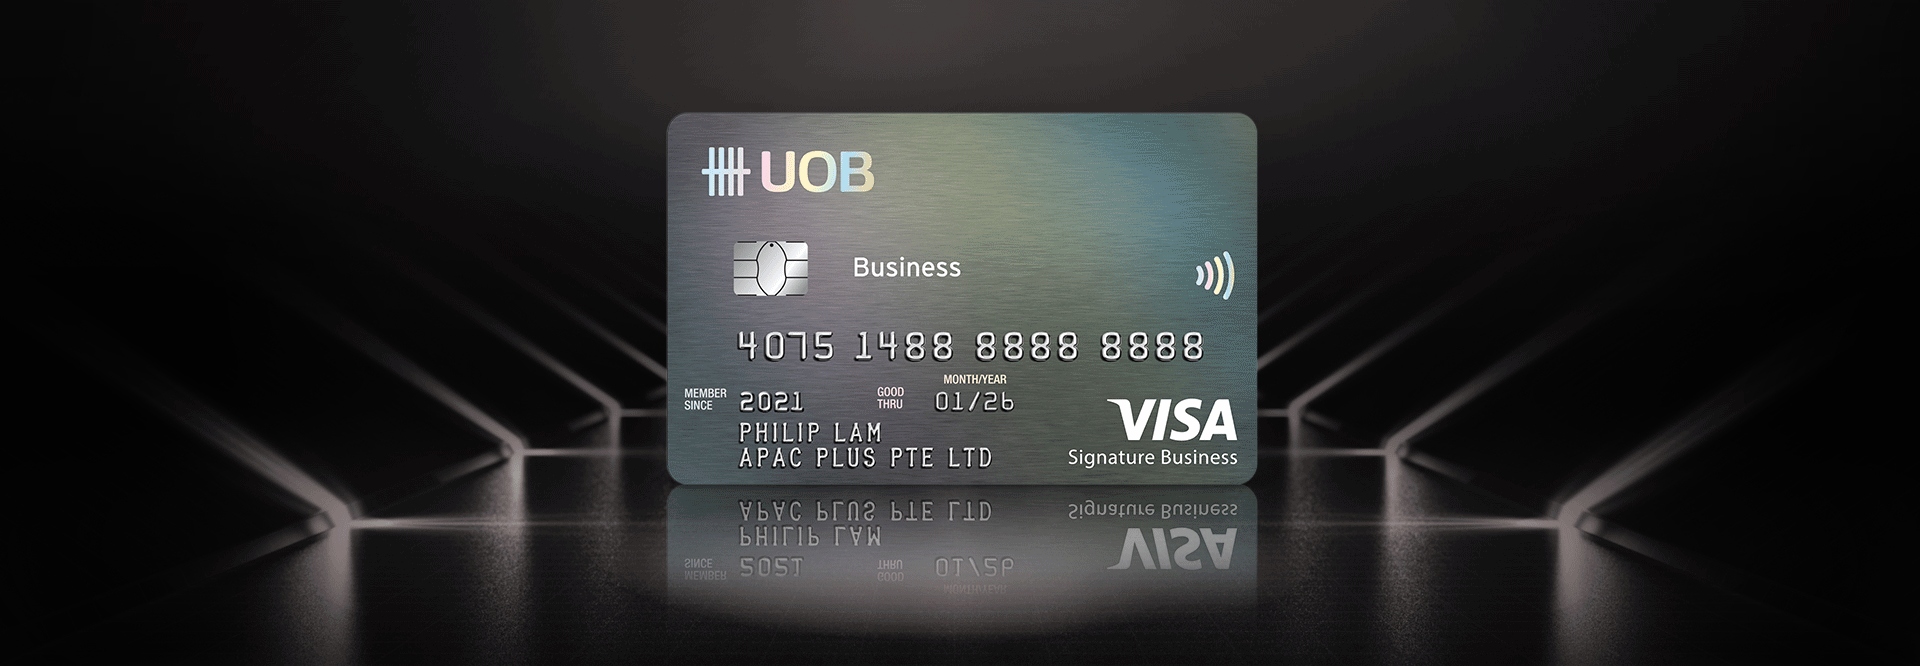 UOB Platinum/Signature Business Card